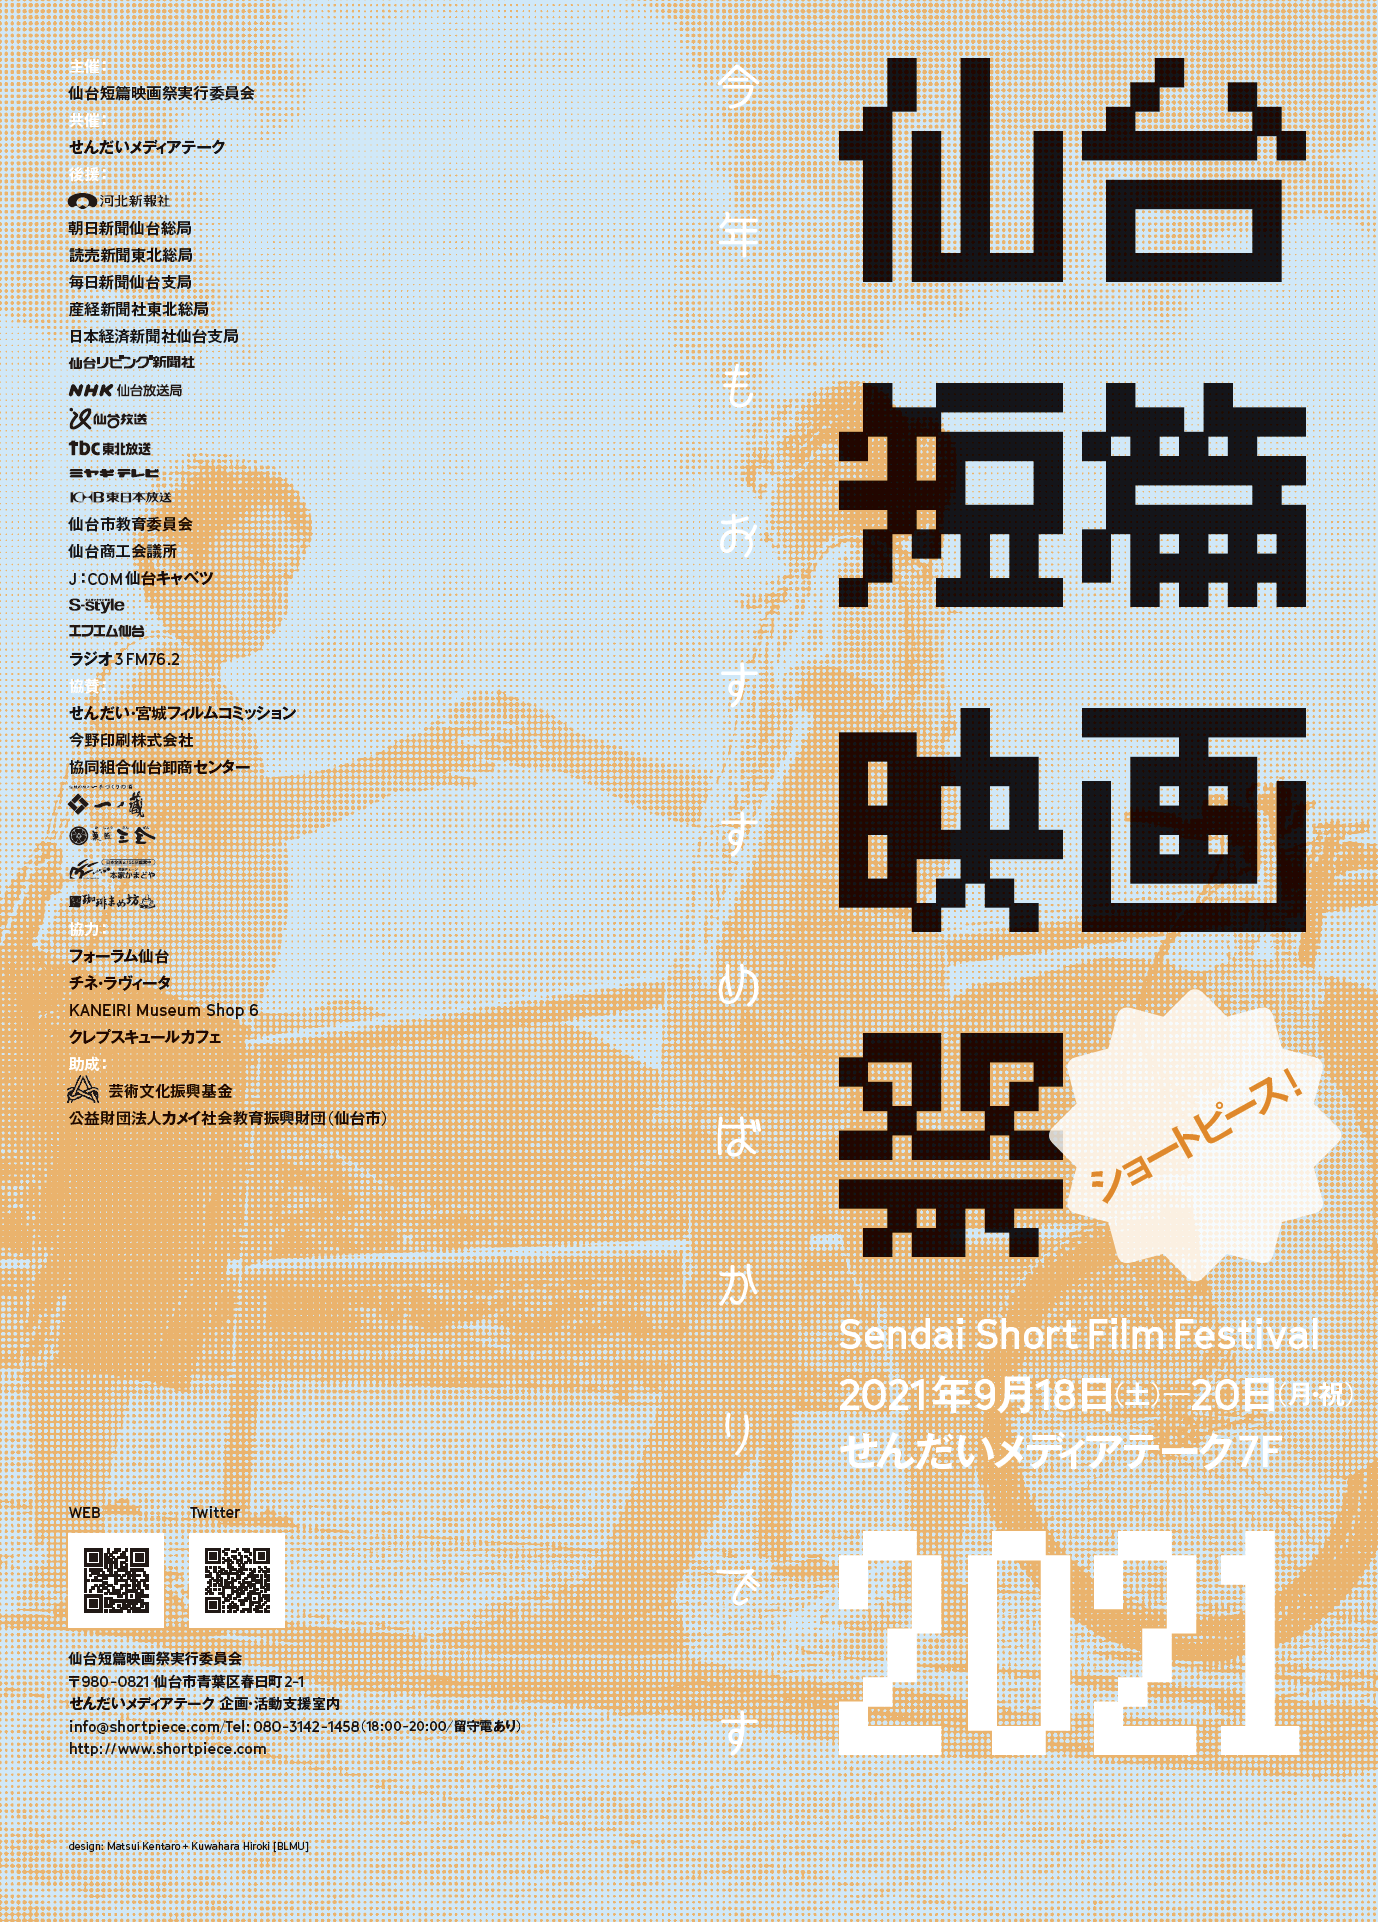 ショートピース 仙台短篇映画祭 21 イベント 公益財団法人仙台市市民文化事業団